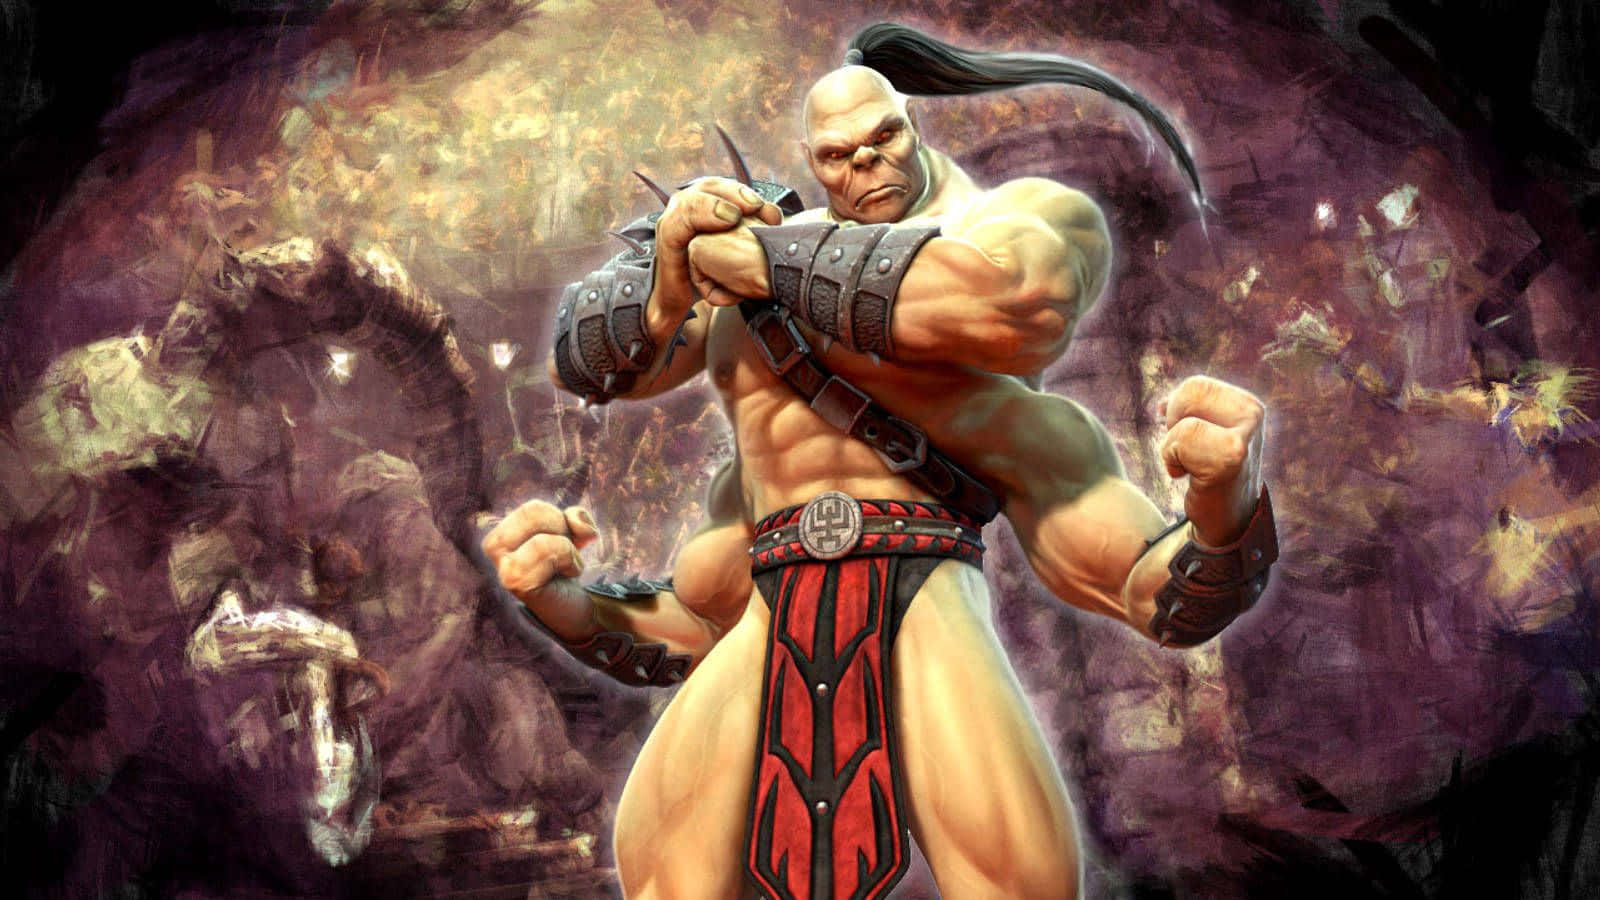 Fierce Goro from Mortal Kombat in Action Wallpaper